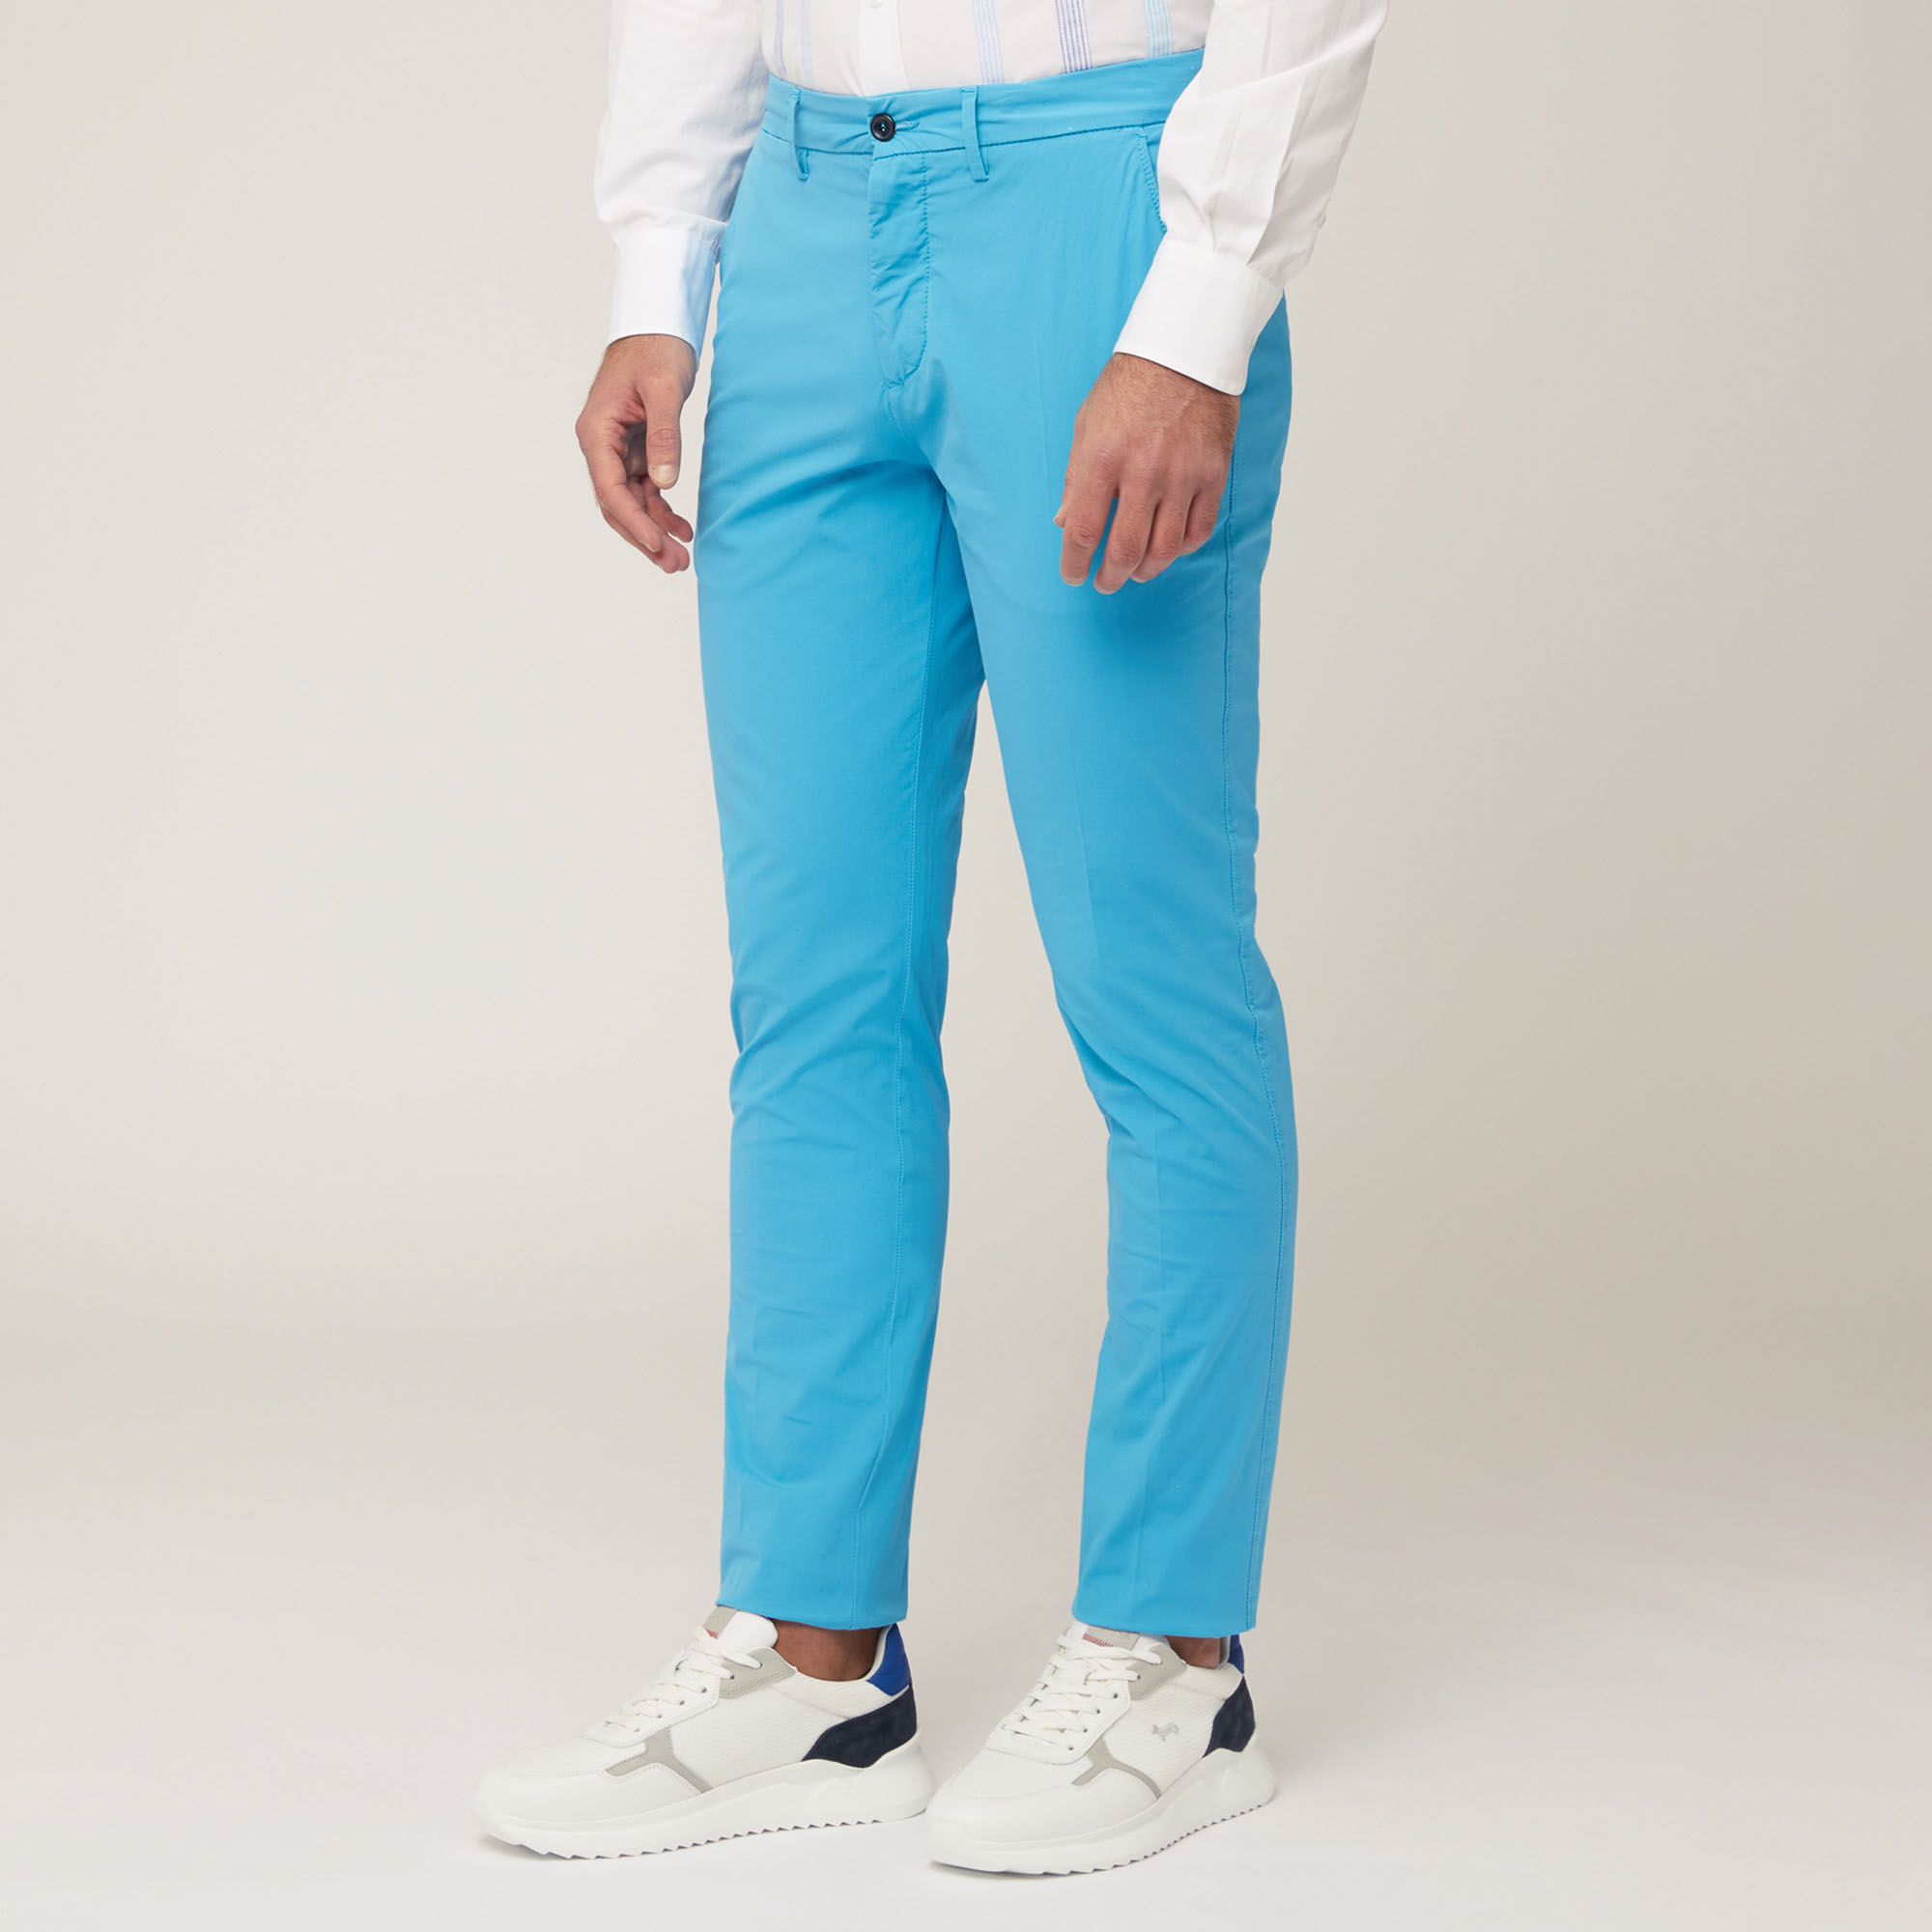 Pantaloni Chino Narrow Fit, Turchese, large